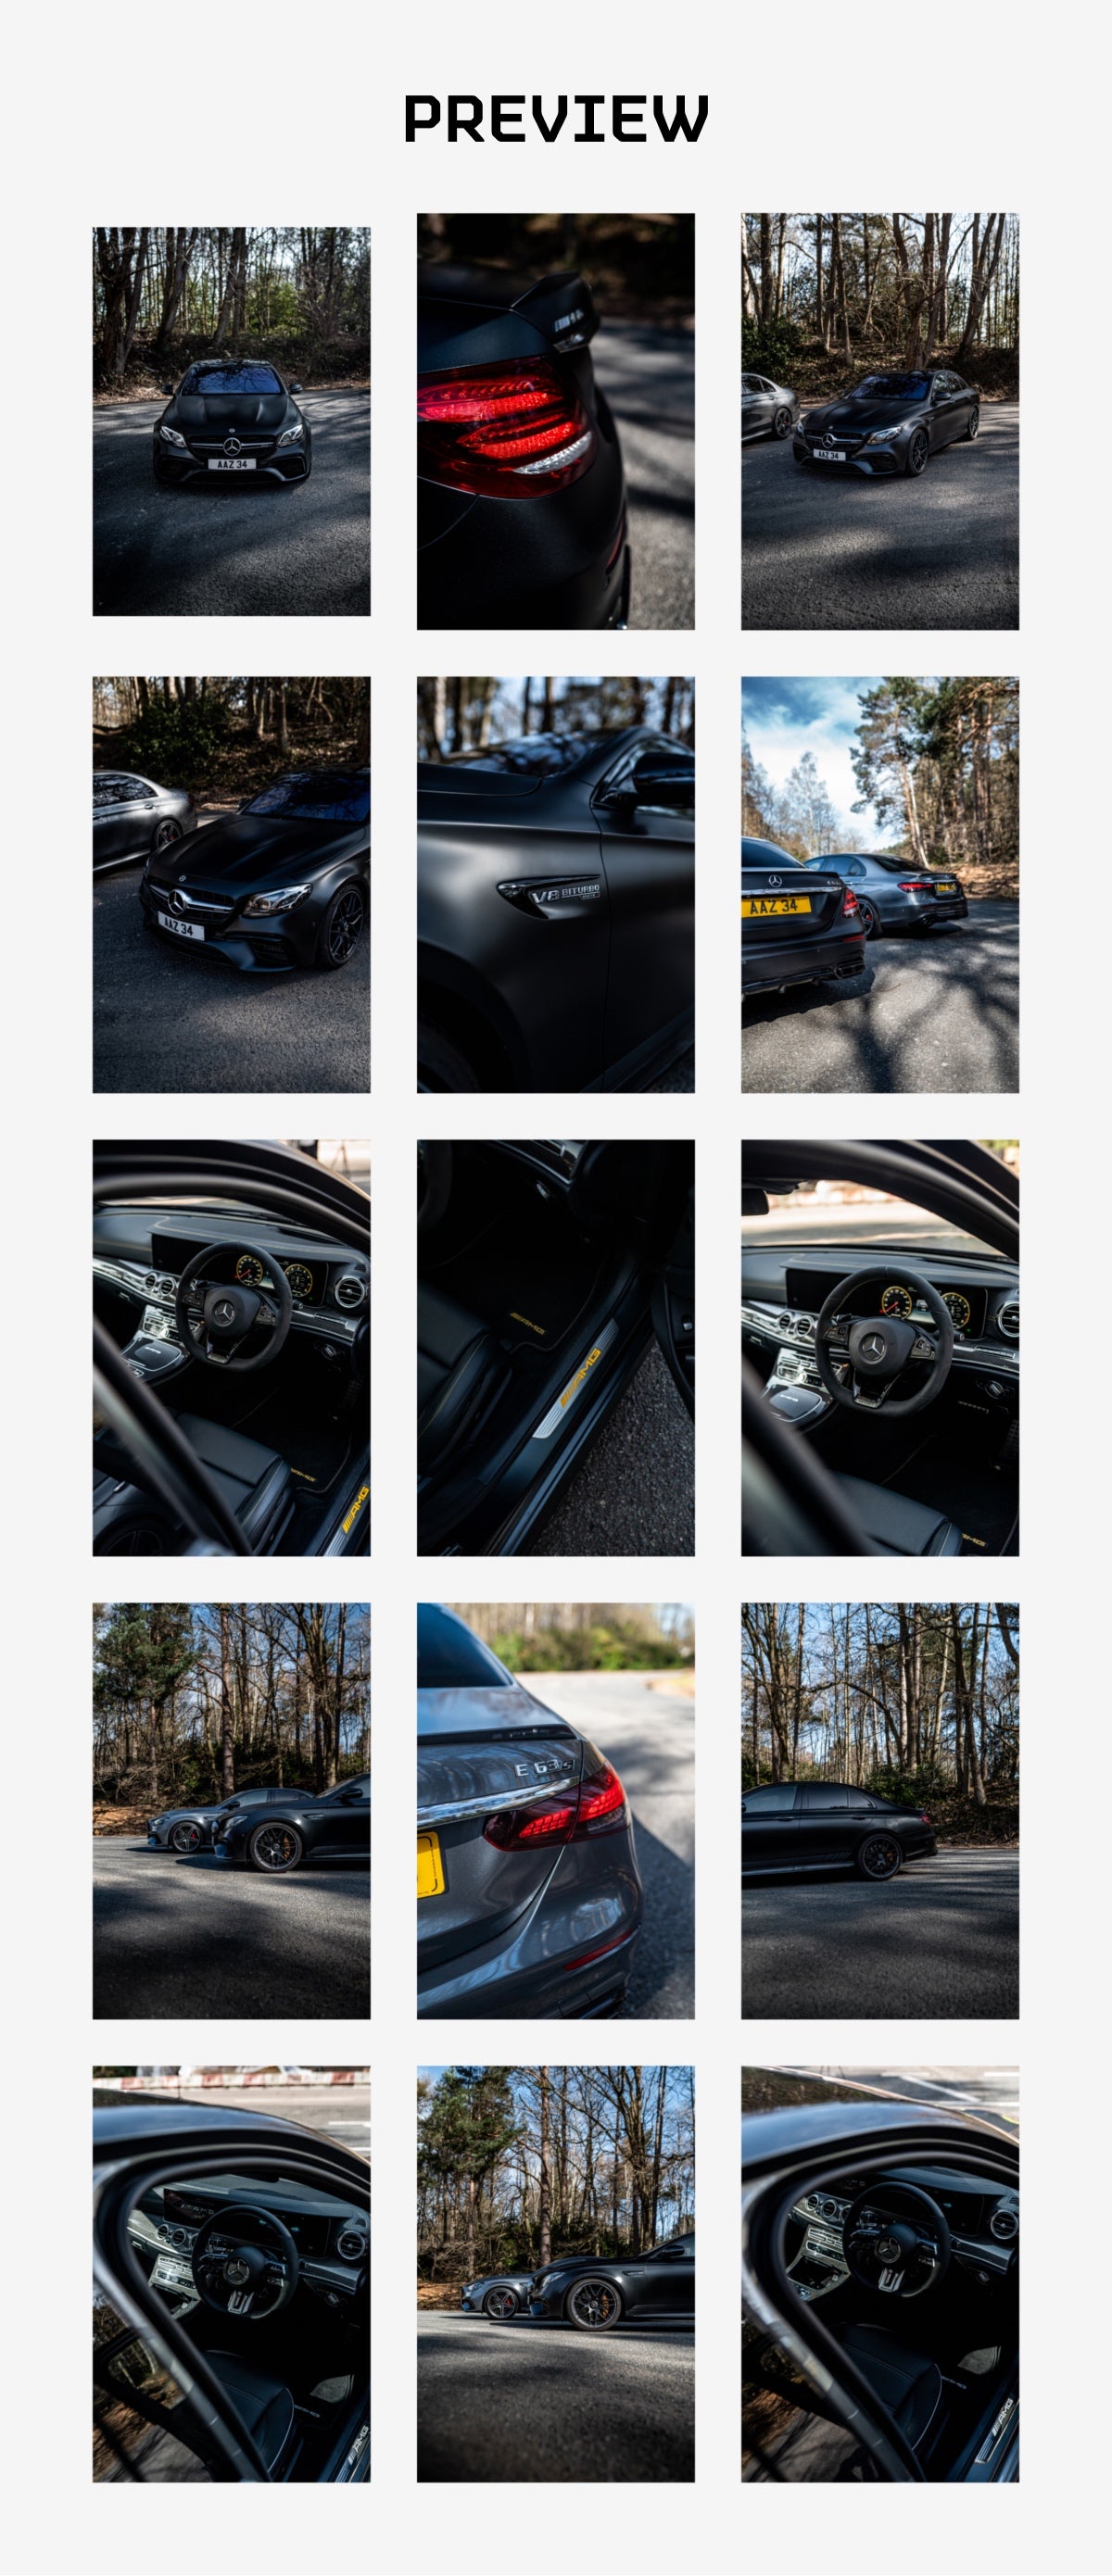 Mercedes-AMG E63 S - Wallpaper Pack